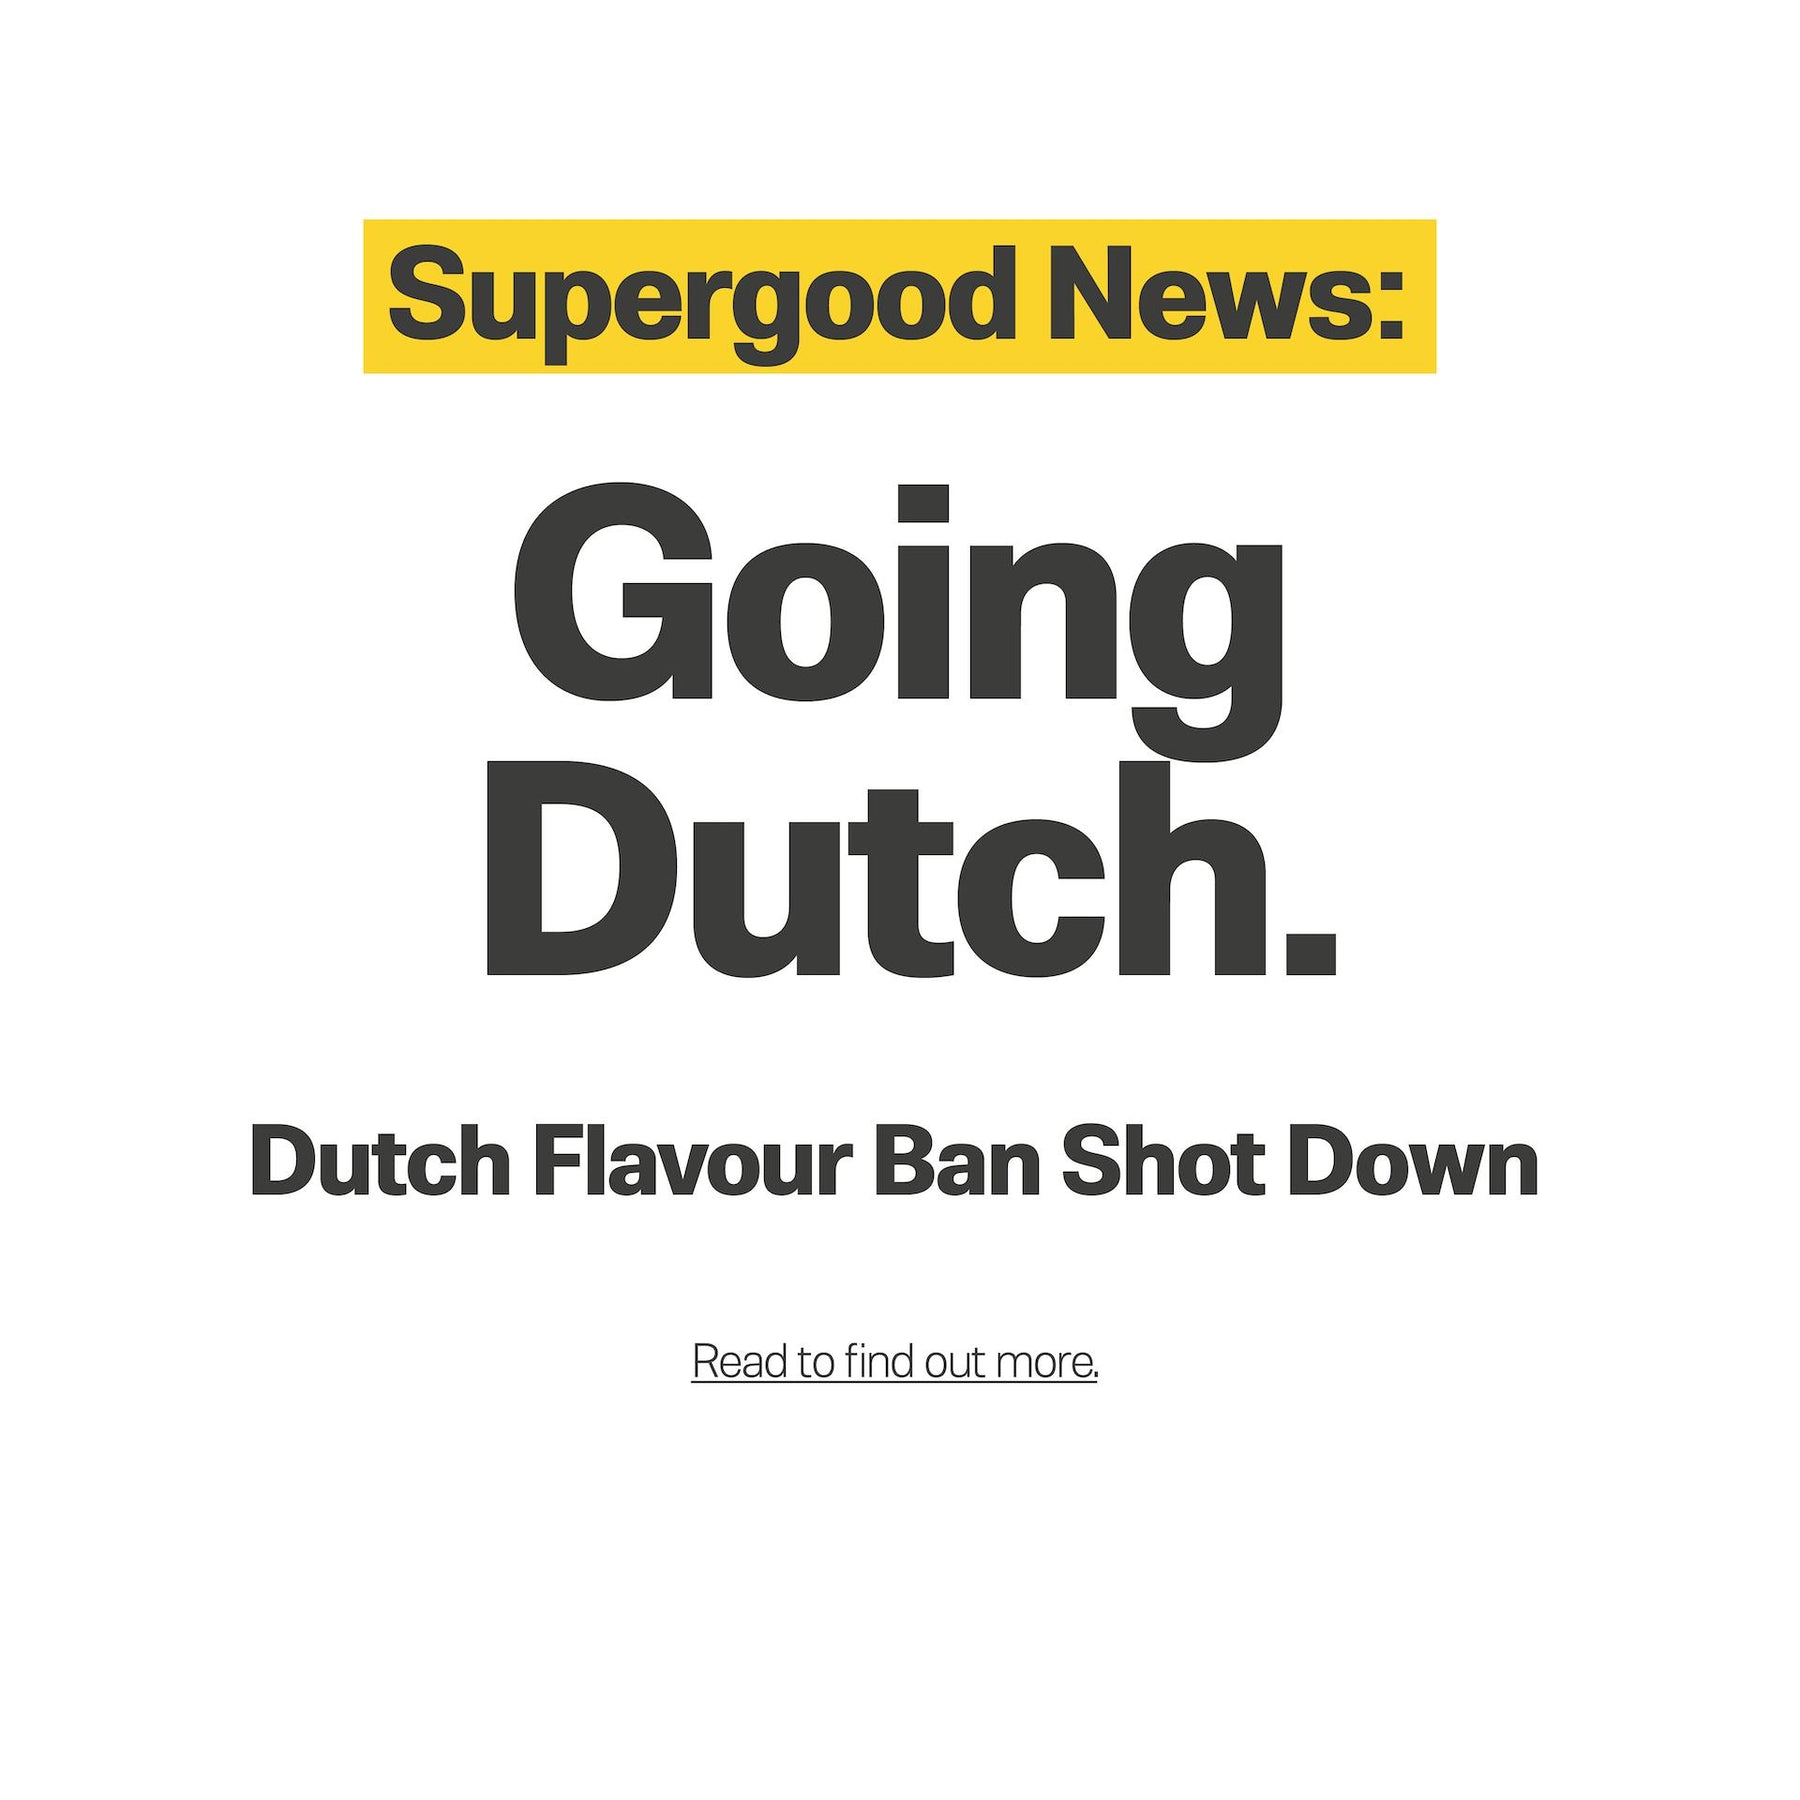 Dutch Flavour Ban Shot Down